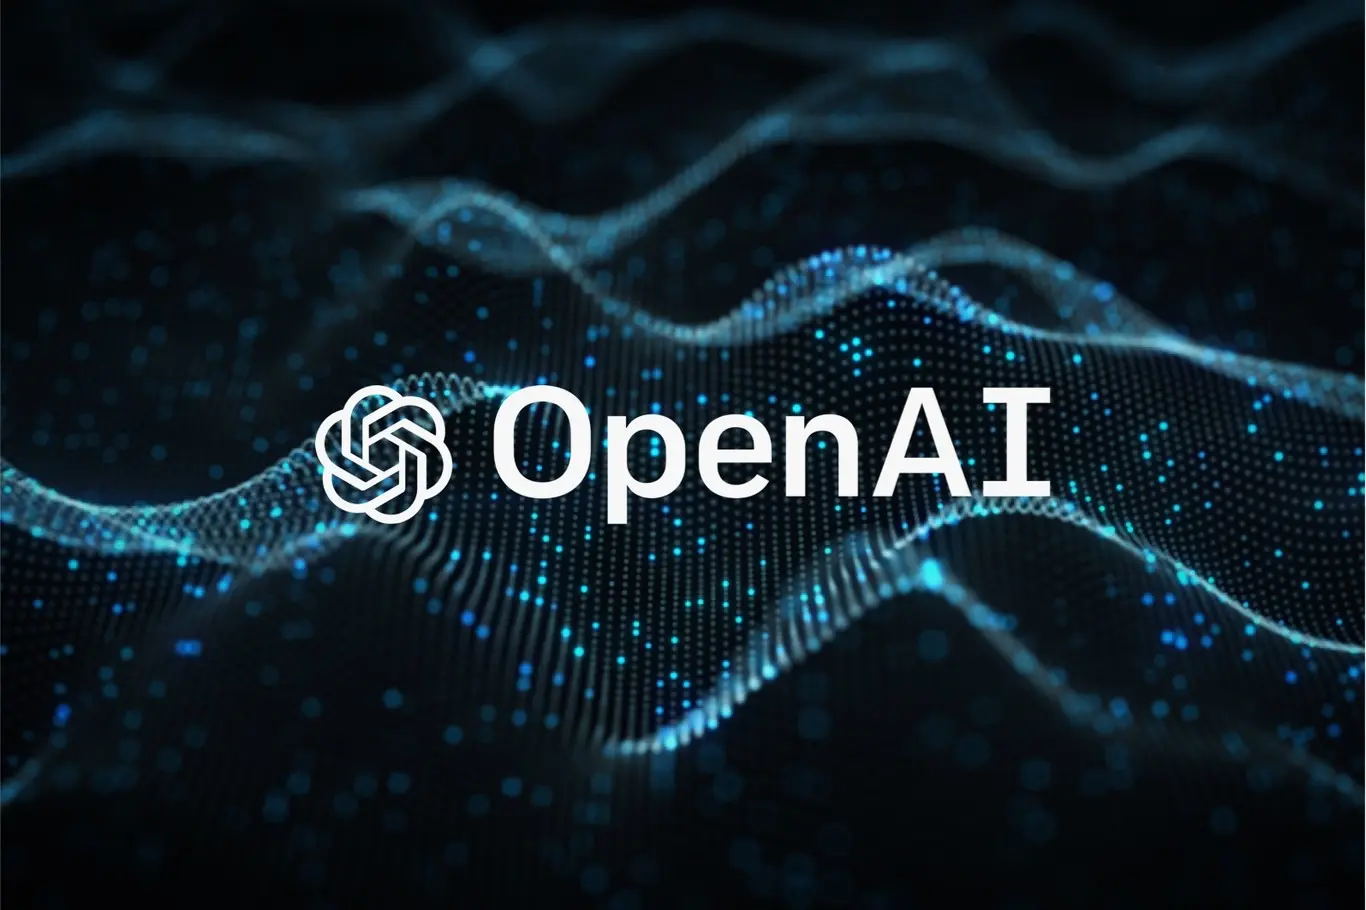 inteligencia artificial openai - Puedo usar Openai gratis